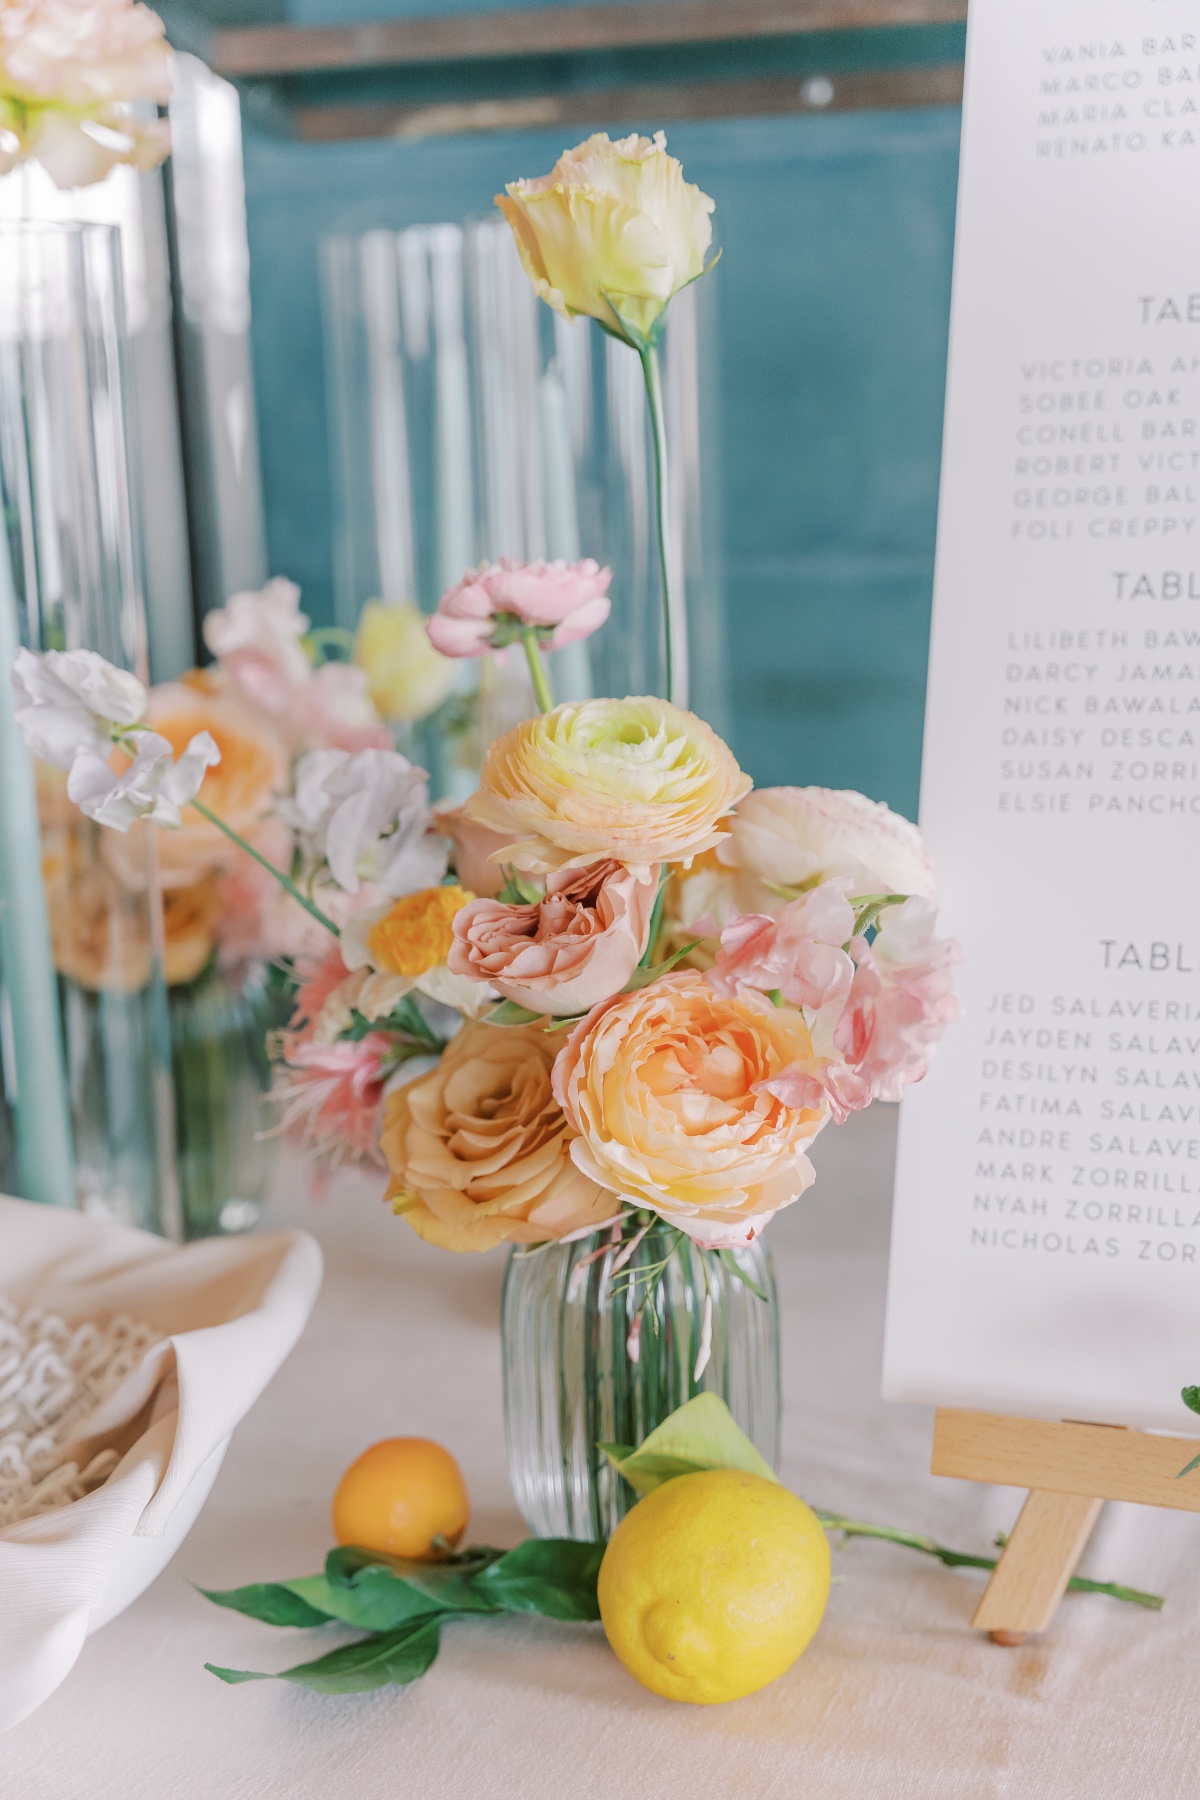 using real citrus fruit in wedding arrangements